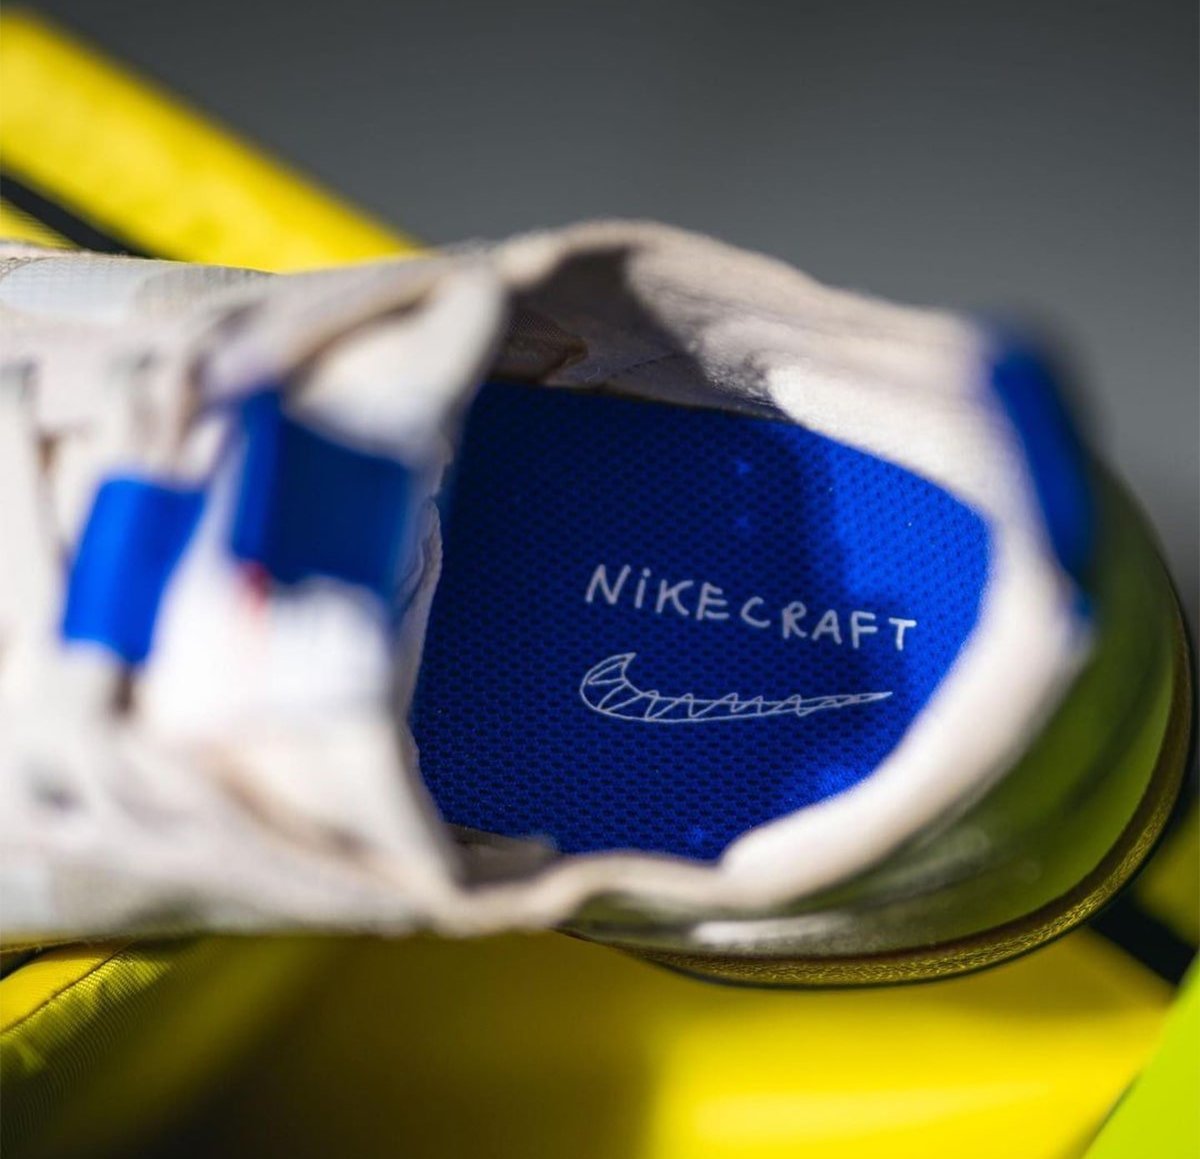 Tom Sachs NikeCraft General Purpose Shoe DA6672-200 Release Date Pricing